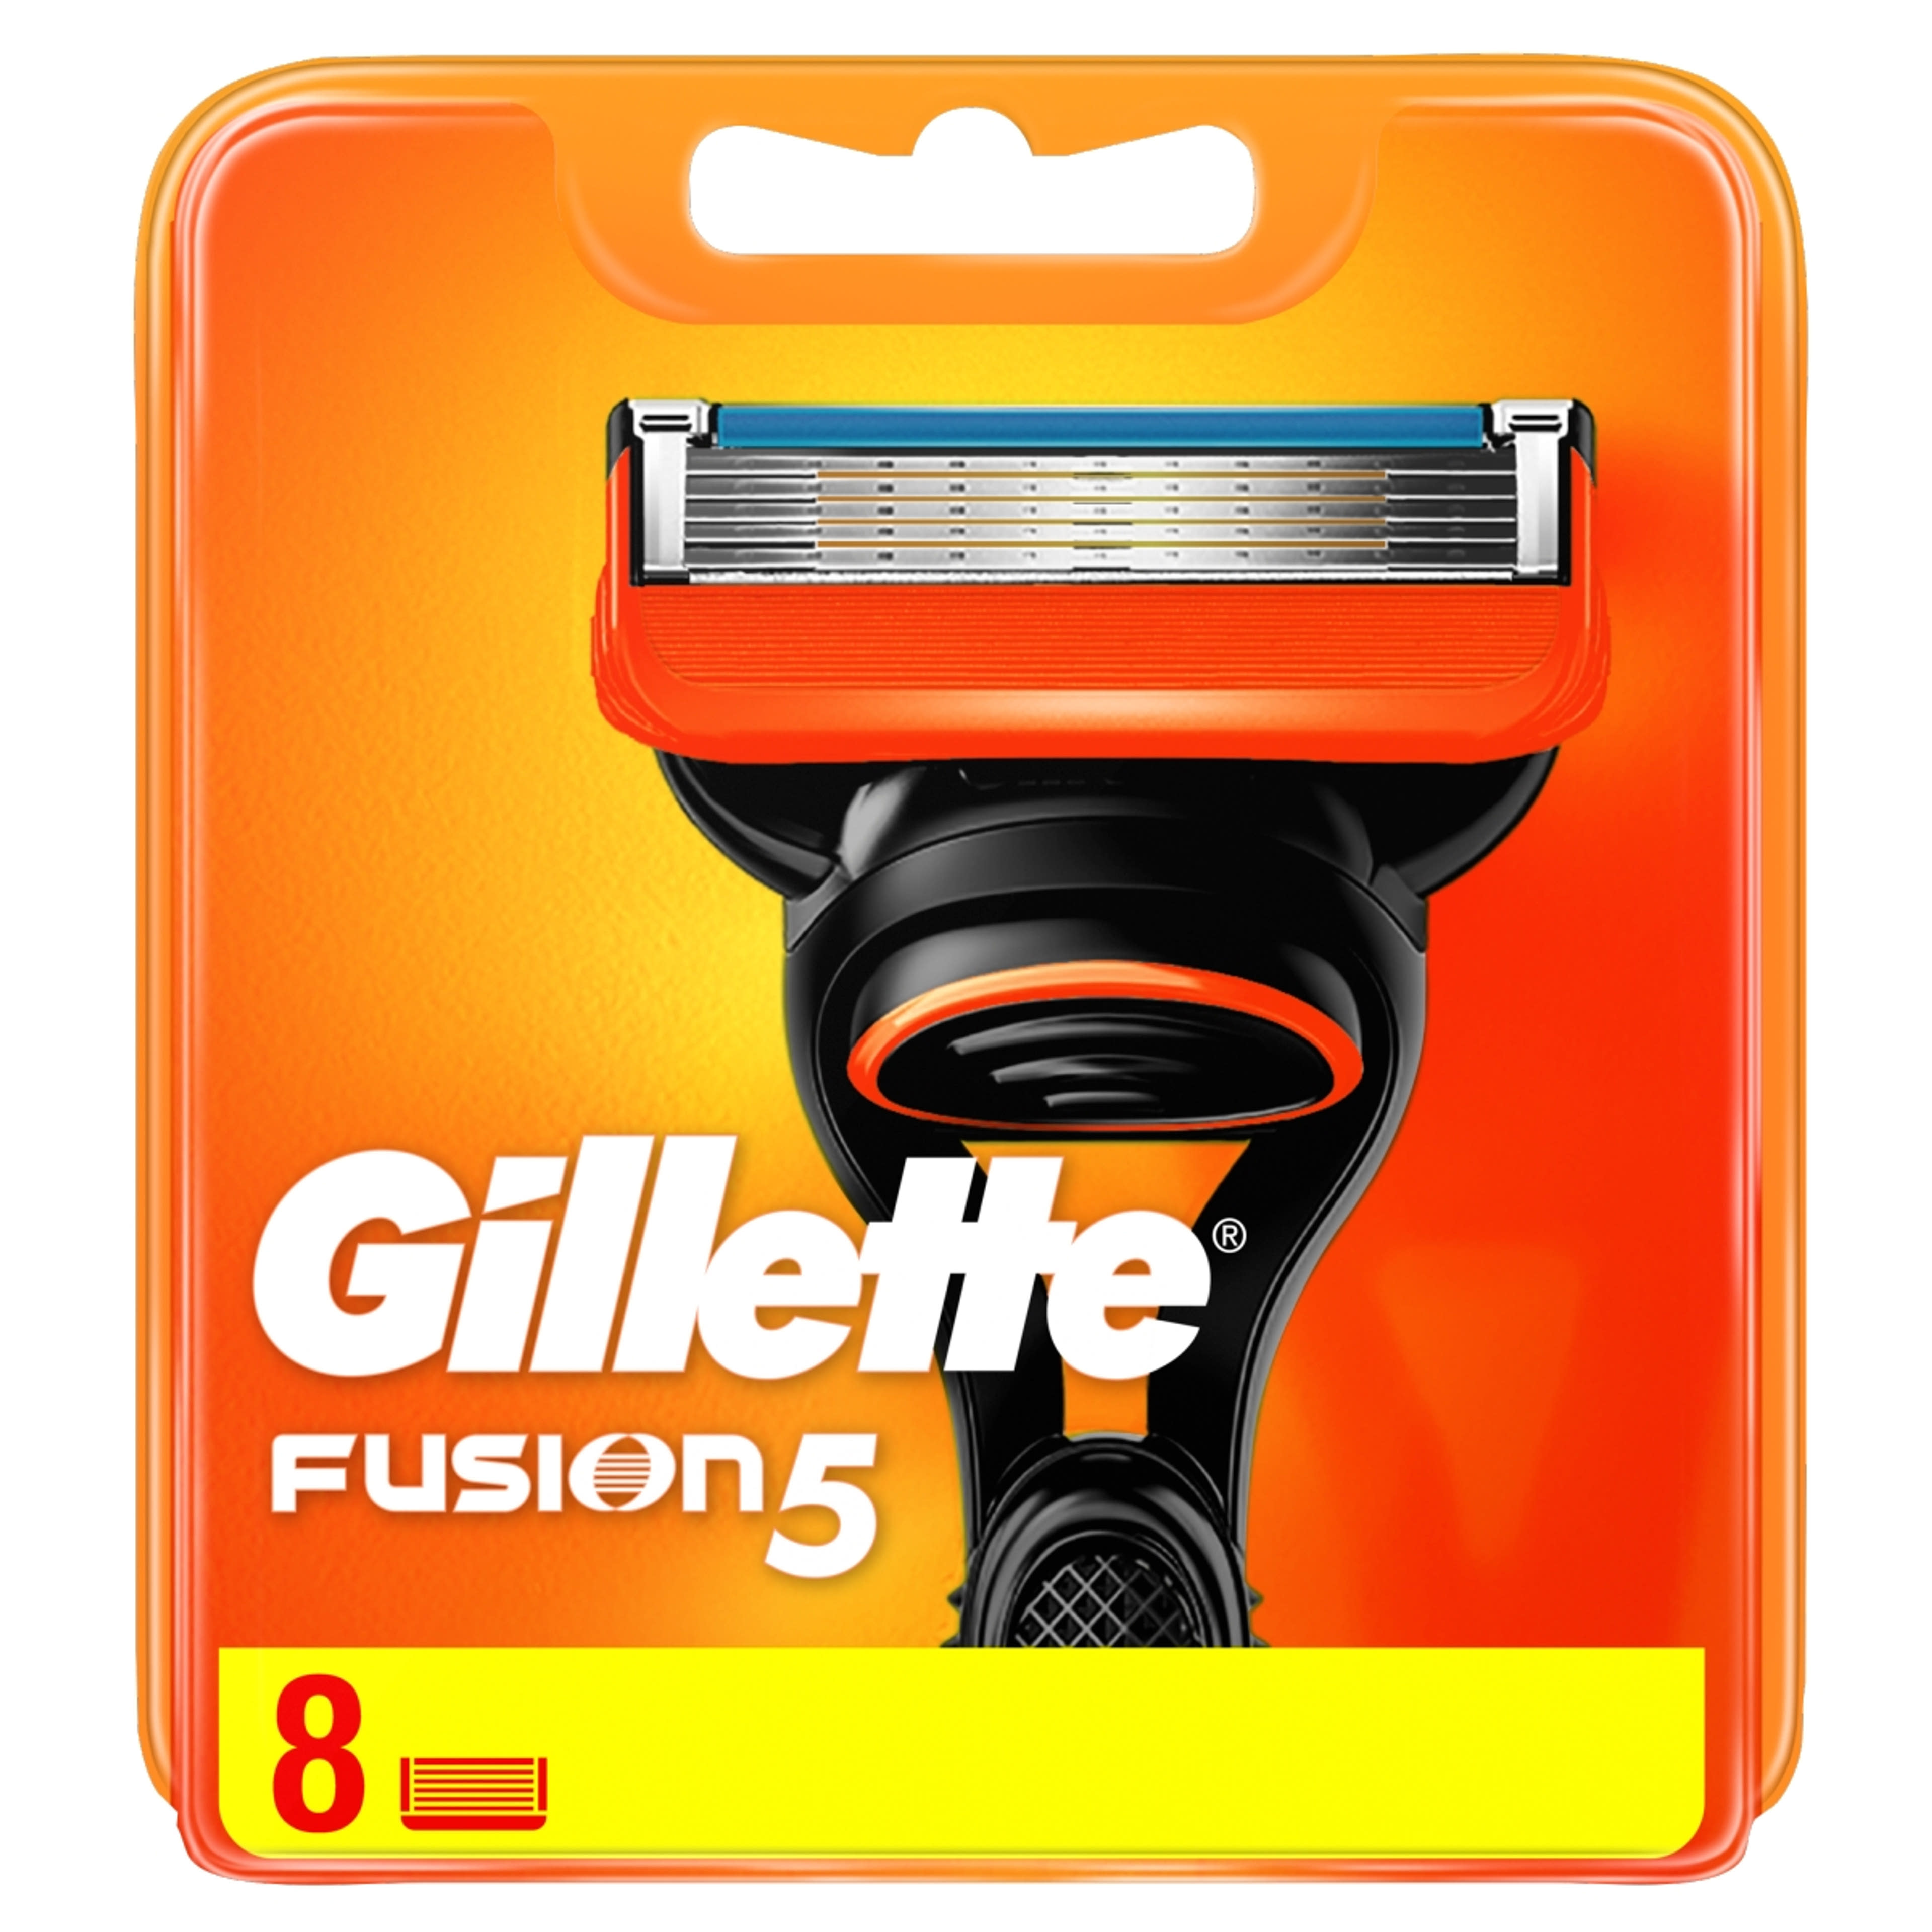 Gillette Fusion borotvabetét - 8 db